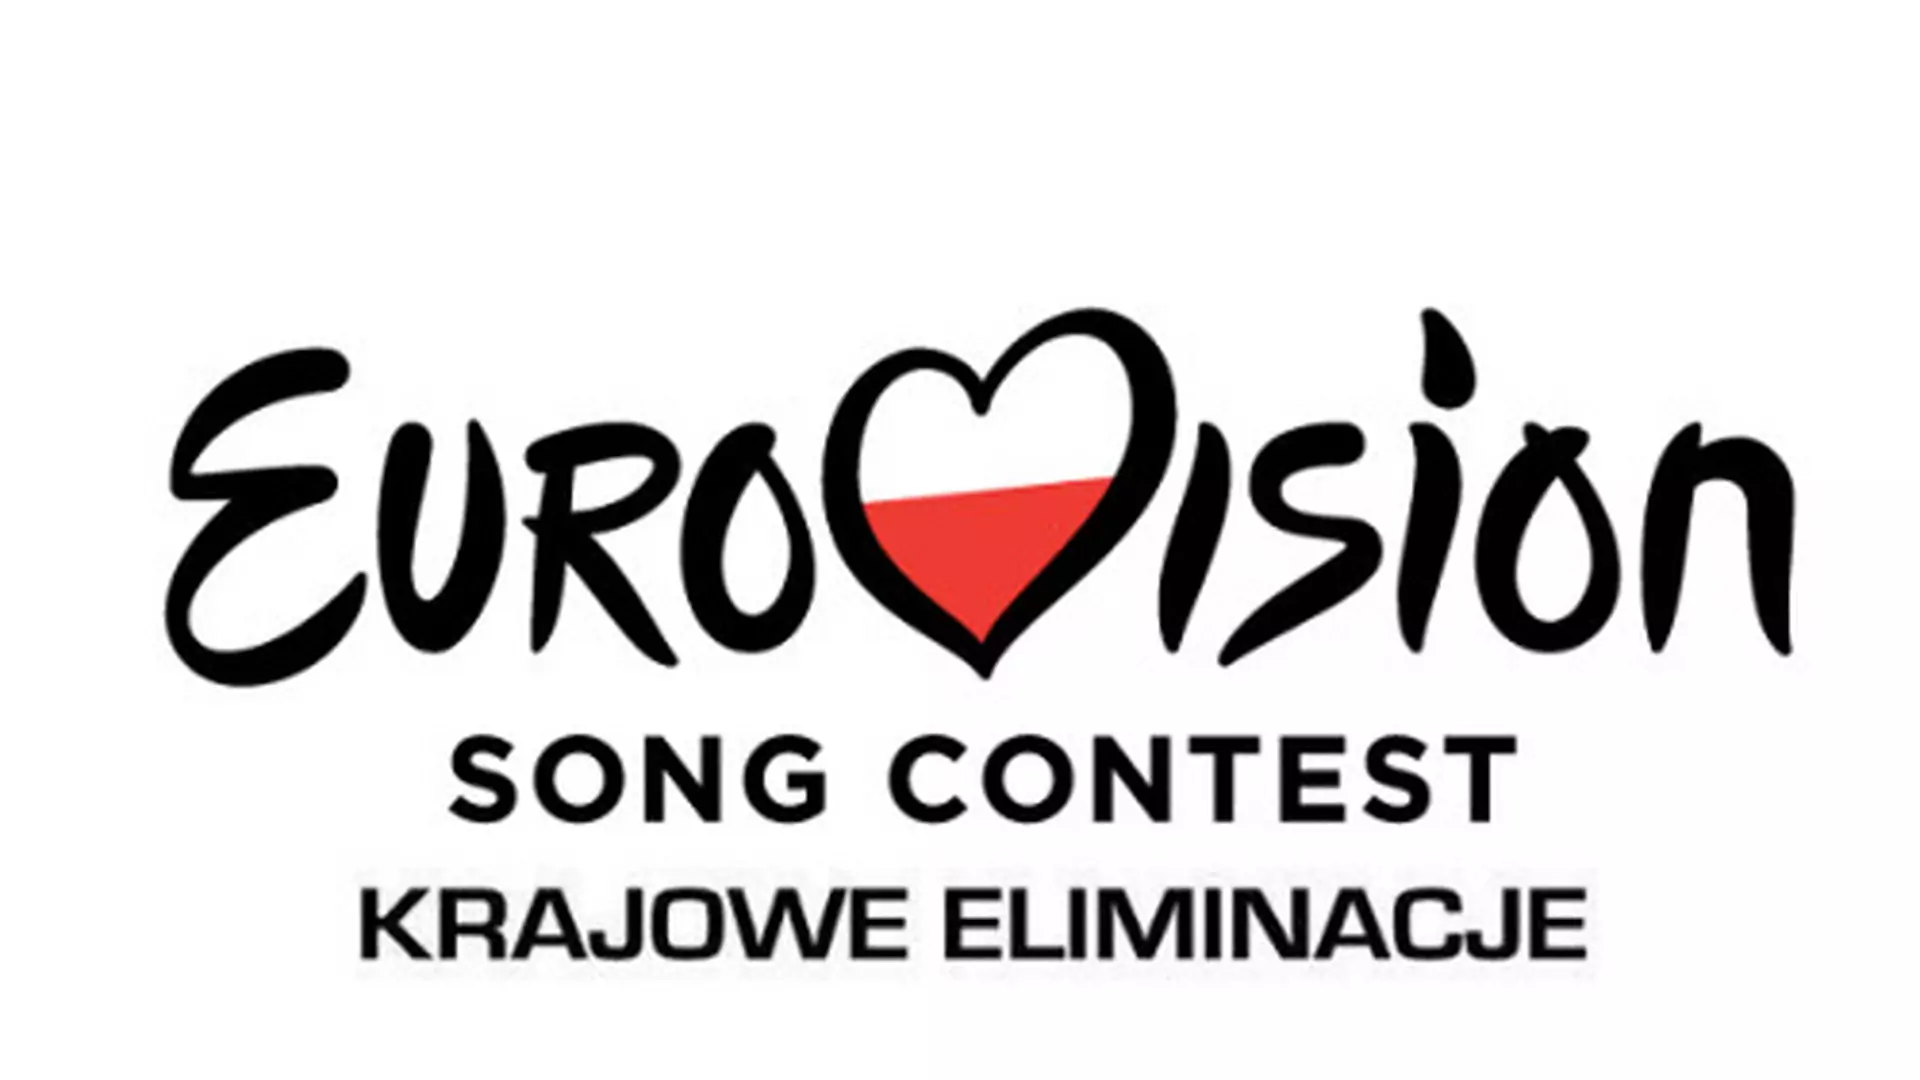 Eurowizja 2018: znamy datę krajowych eliminacji i pełną listę polskich artystów